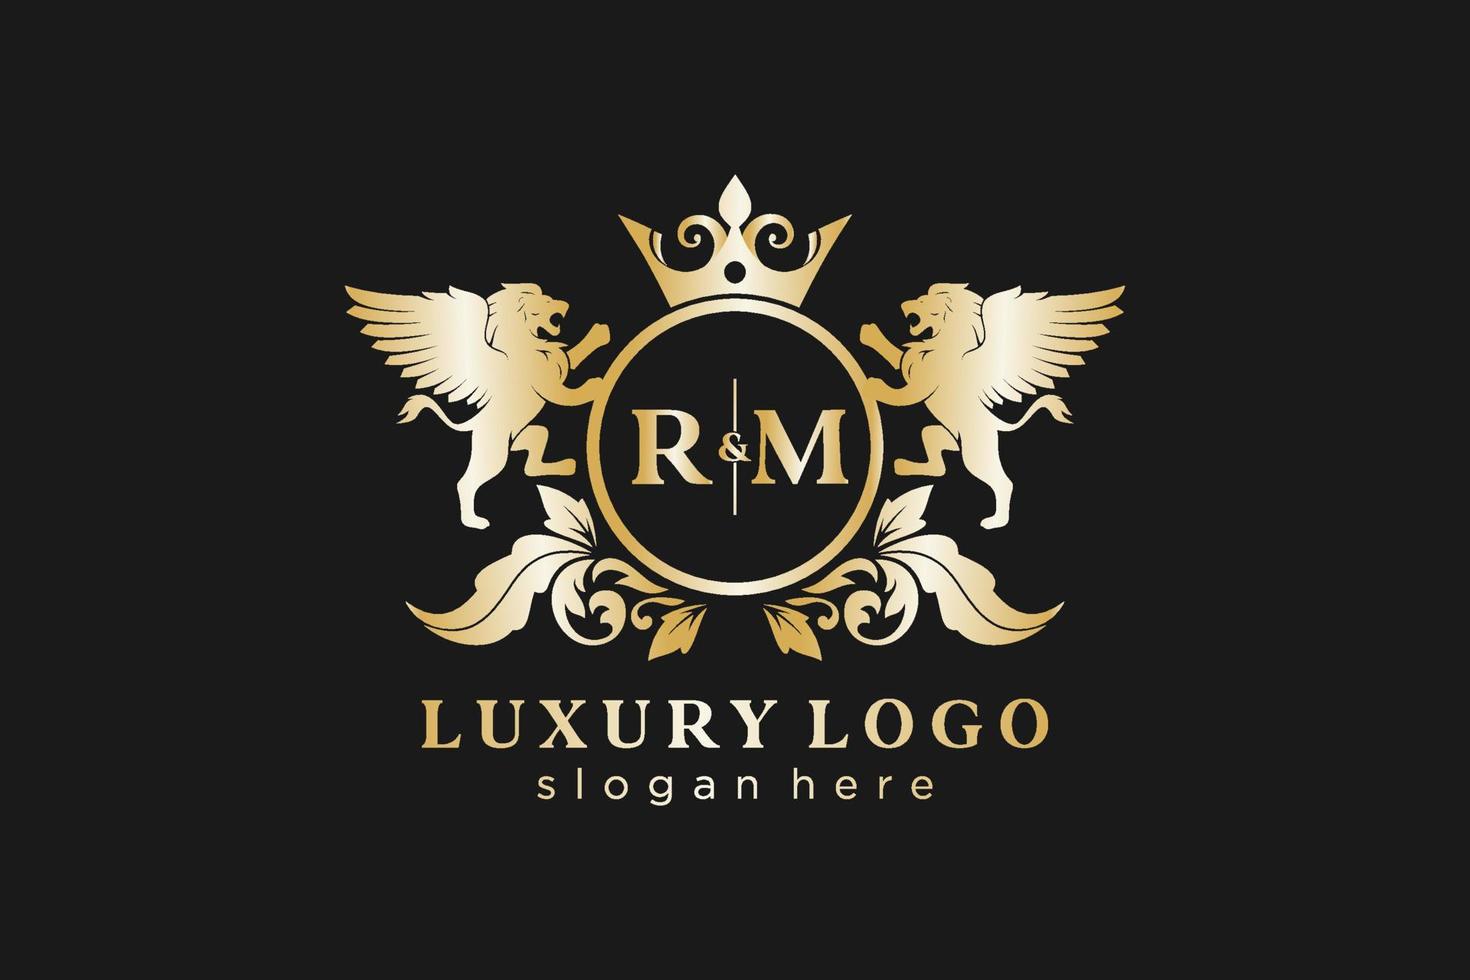 iniziale rm lettera Leone reale lusso logo modello nel vettore arte per ristorante, regalità, boutique, bar, Hotel, araldico, gioielleria, moda e altro vettore illustrazione.